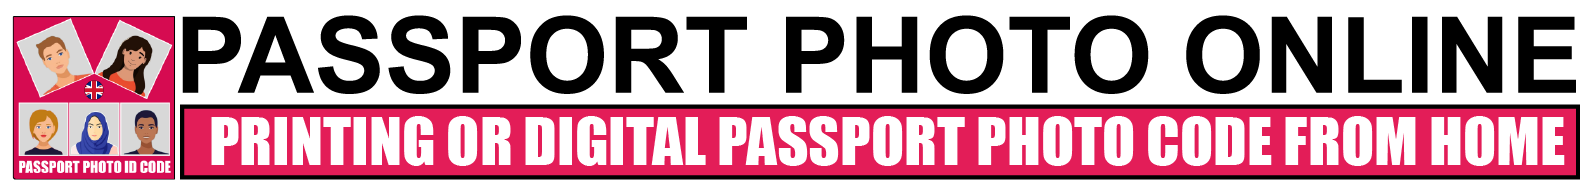 Passport photo online logo